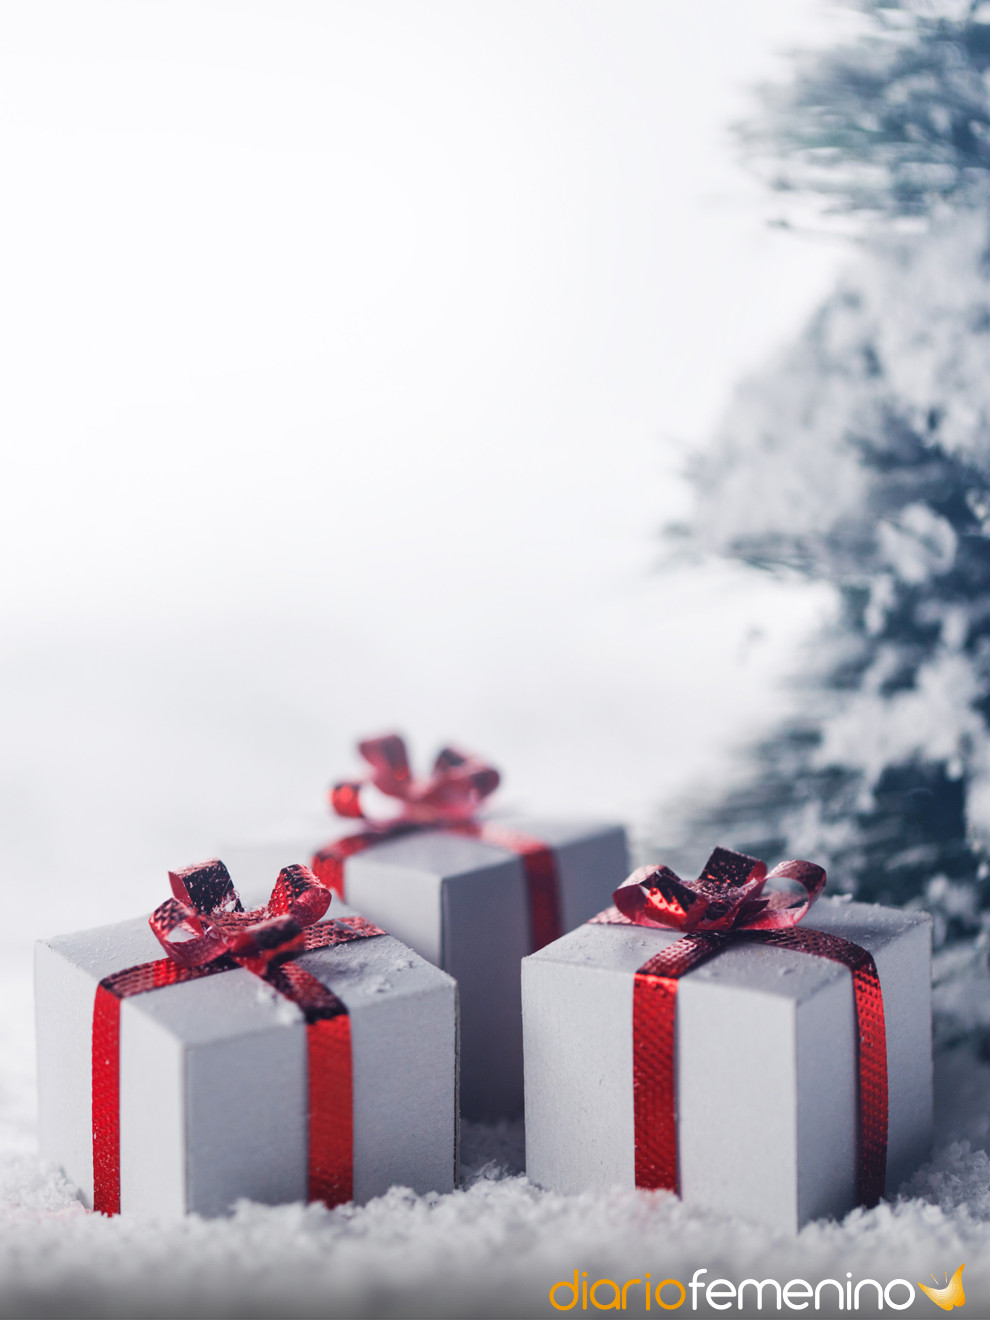 15 ideas de regalos de broma para Navidad (MUY chistosos y originales)